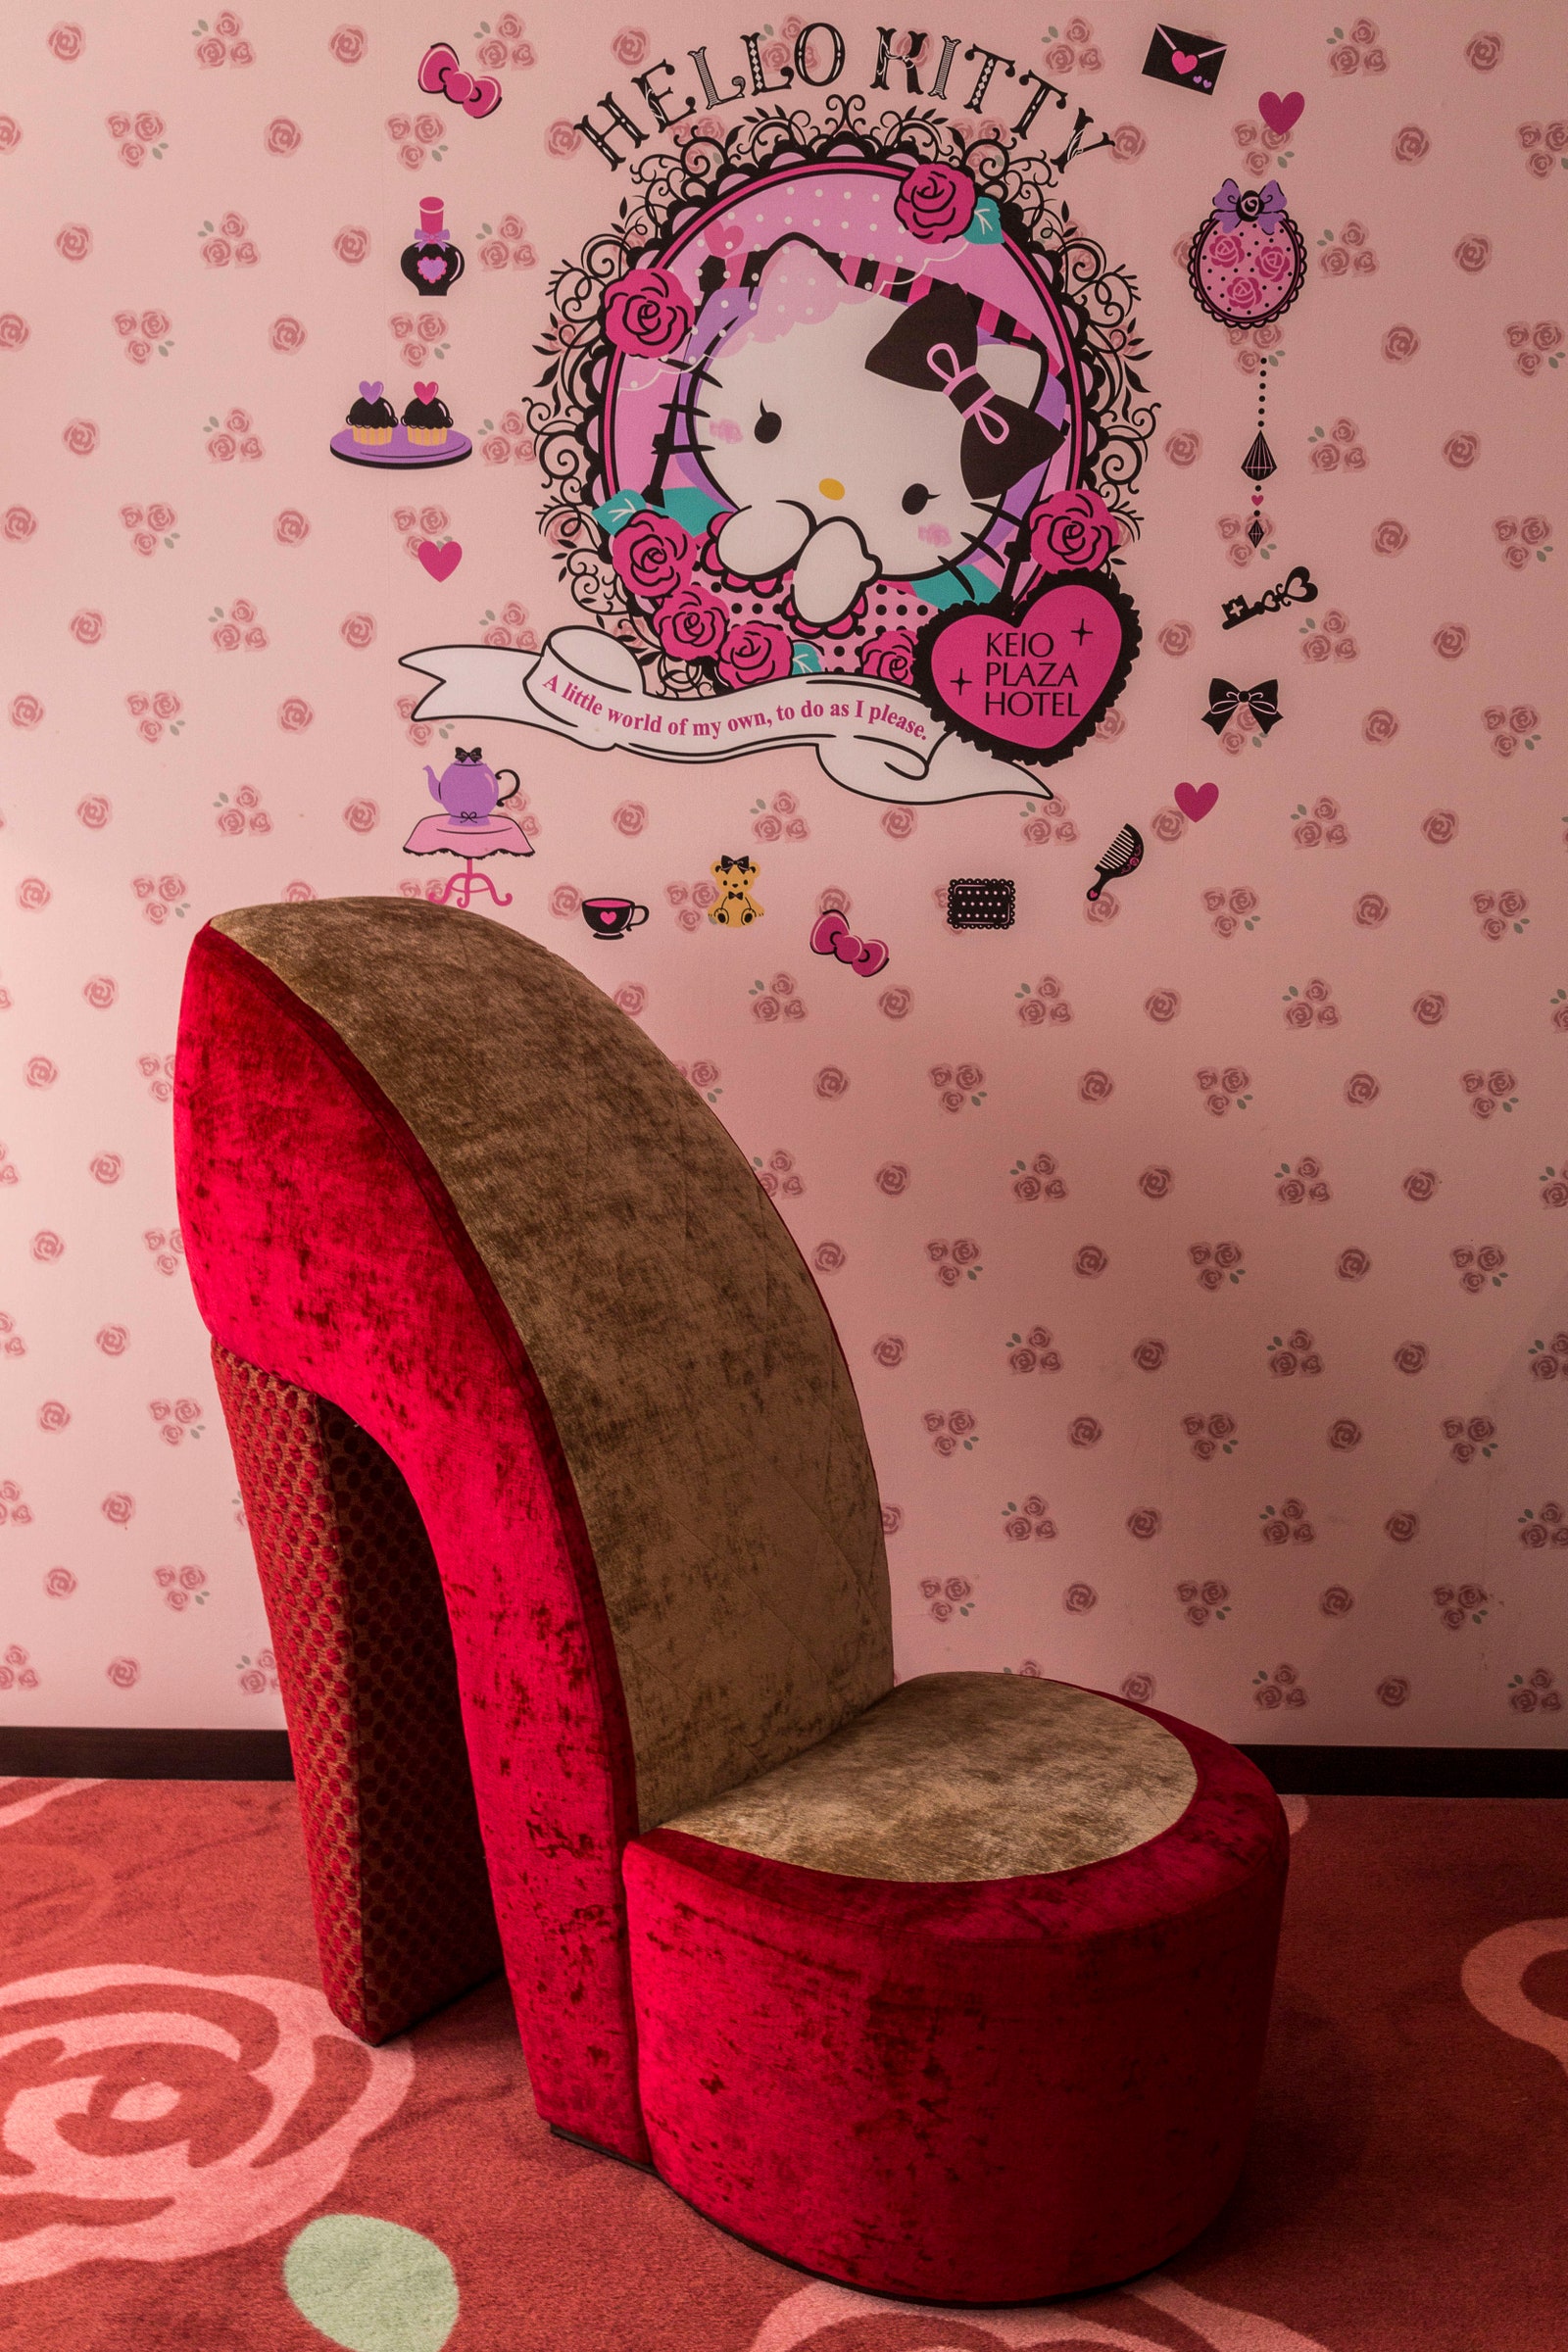 Une chaise à talons hauts dans le complexe à thème Hello Kitty pour adultes à l'intérieur de l'hôtel Keio Plaza à Tokyo au Japon.